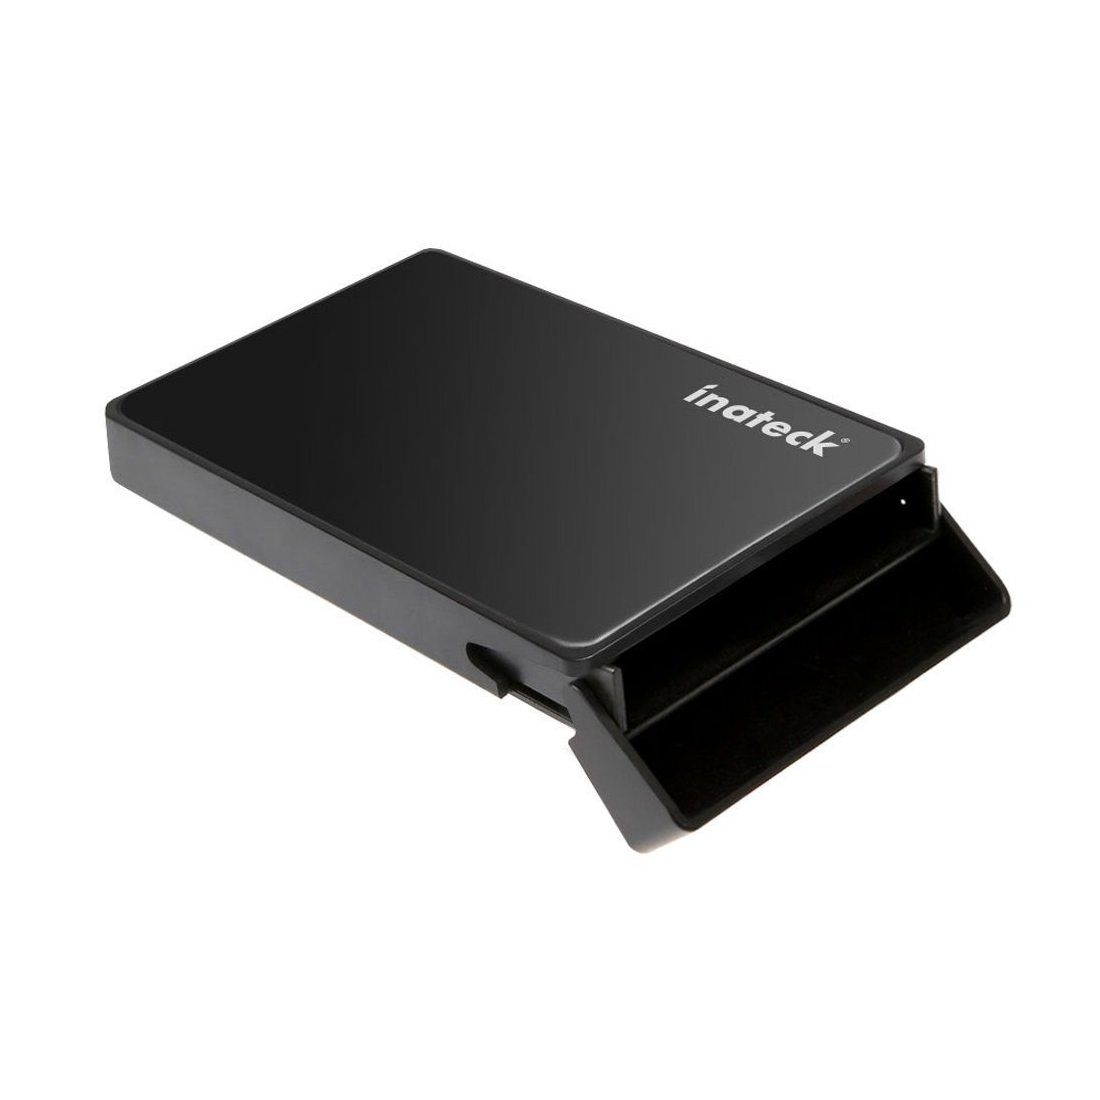 [Optimisé SSD/UASP compatible] Inateck USB 3.0 Boîtier disque dur 2,5 SATA disque dur externe 2,5 pouces / SSD